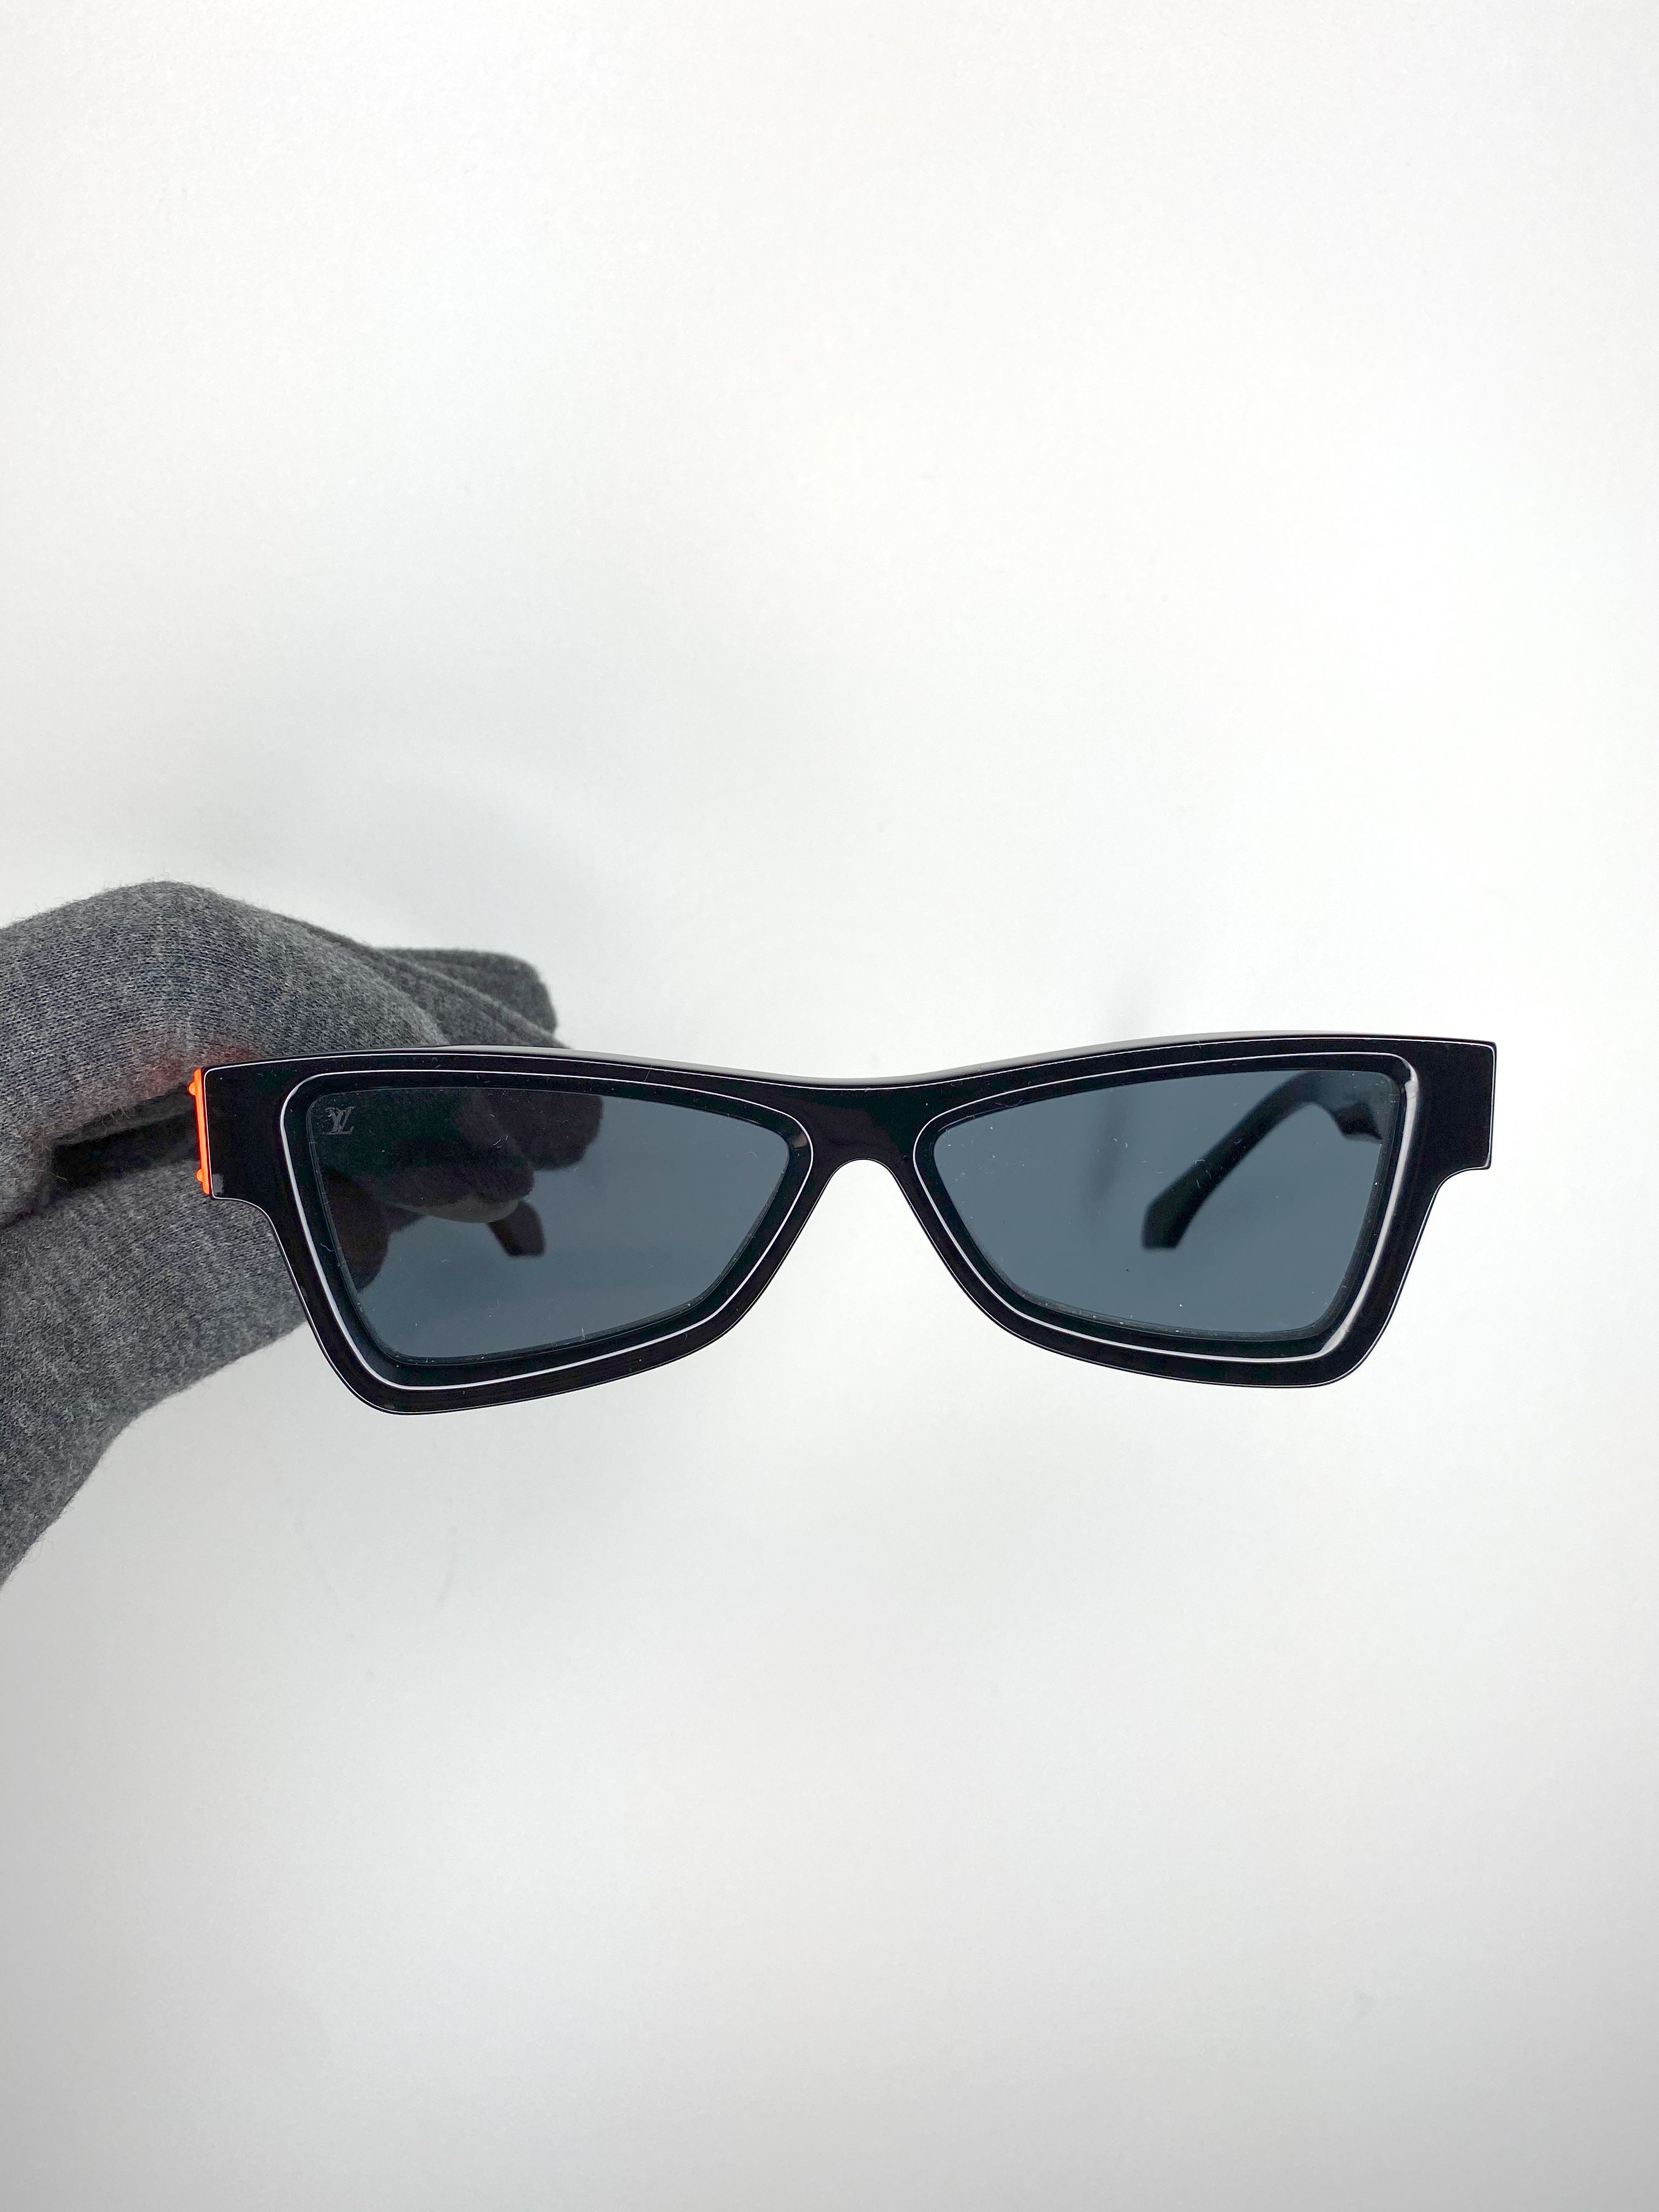 SAINT on X: Louis Vuitton sunglasses by Virgil Abloh